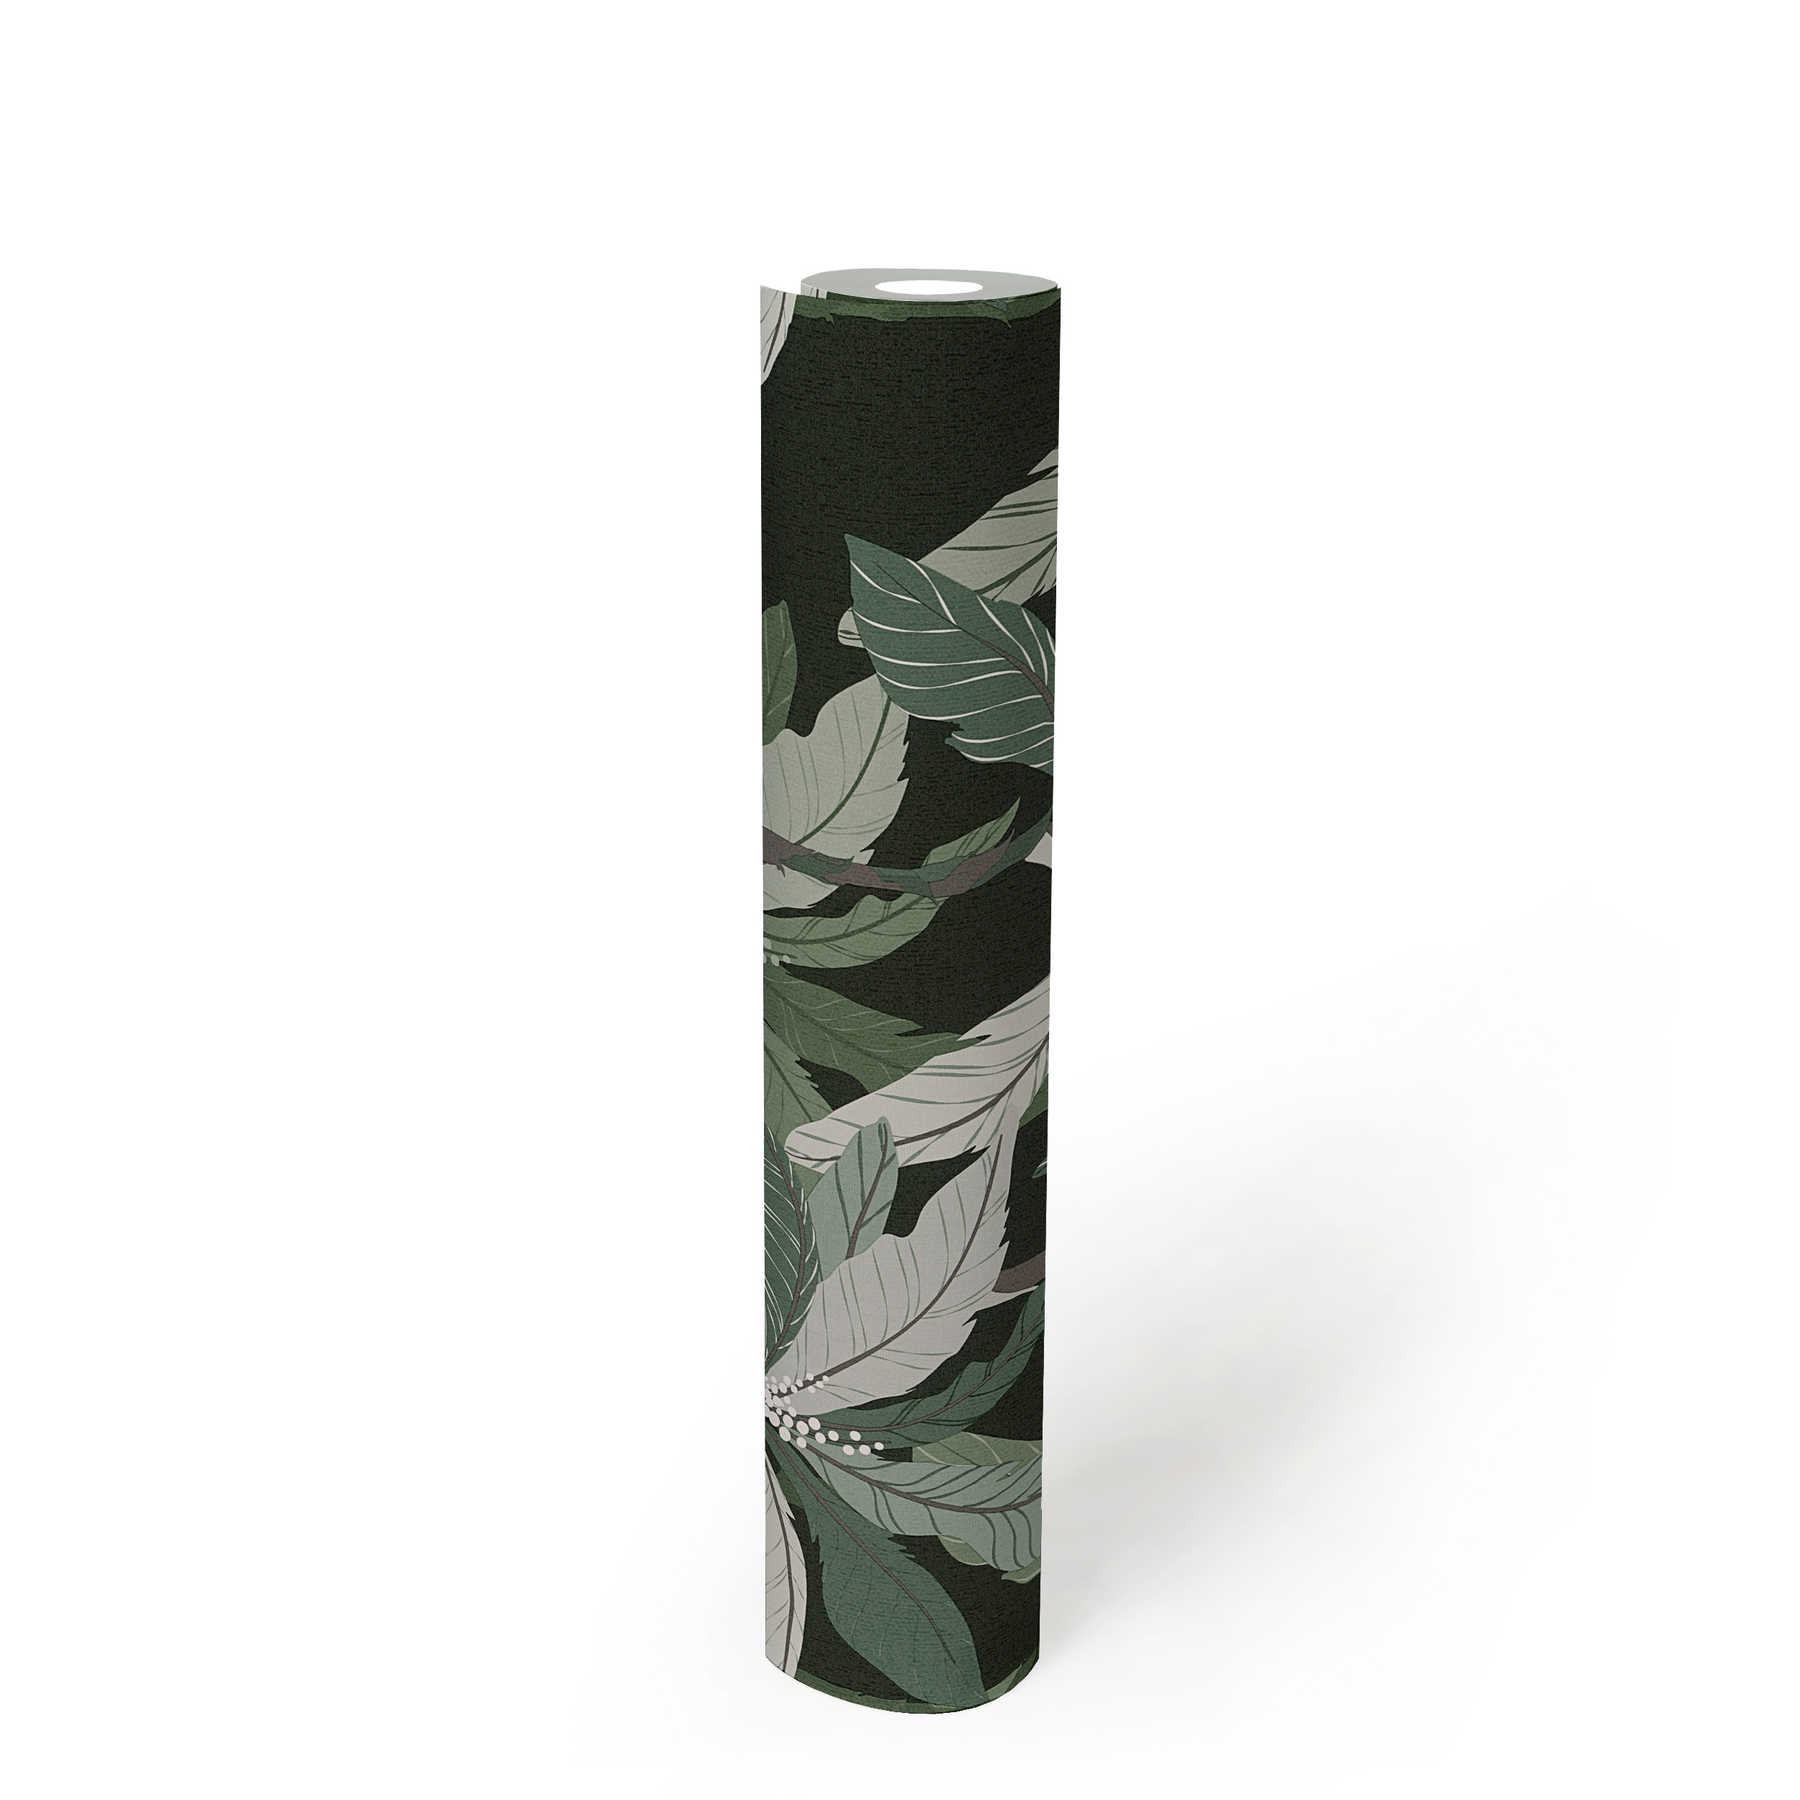             Tropen Tapete mit Palmen-Design - Grün, Schwarz
        